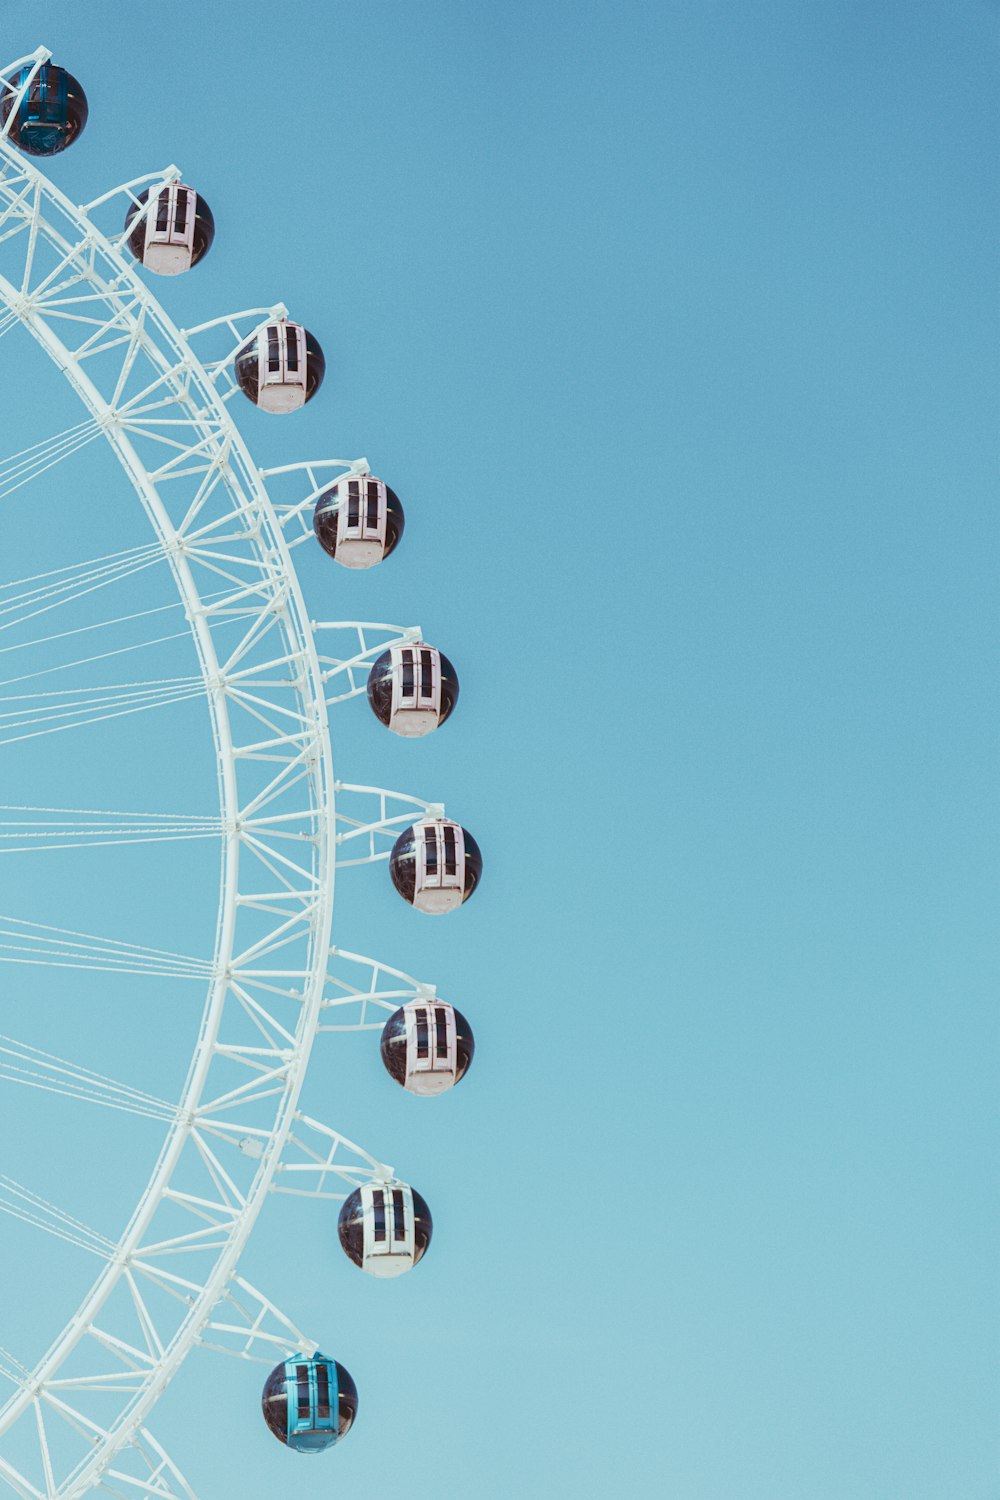 Une grande roue est représentée sur un ciel bleu